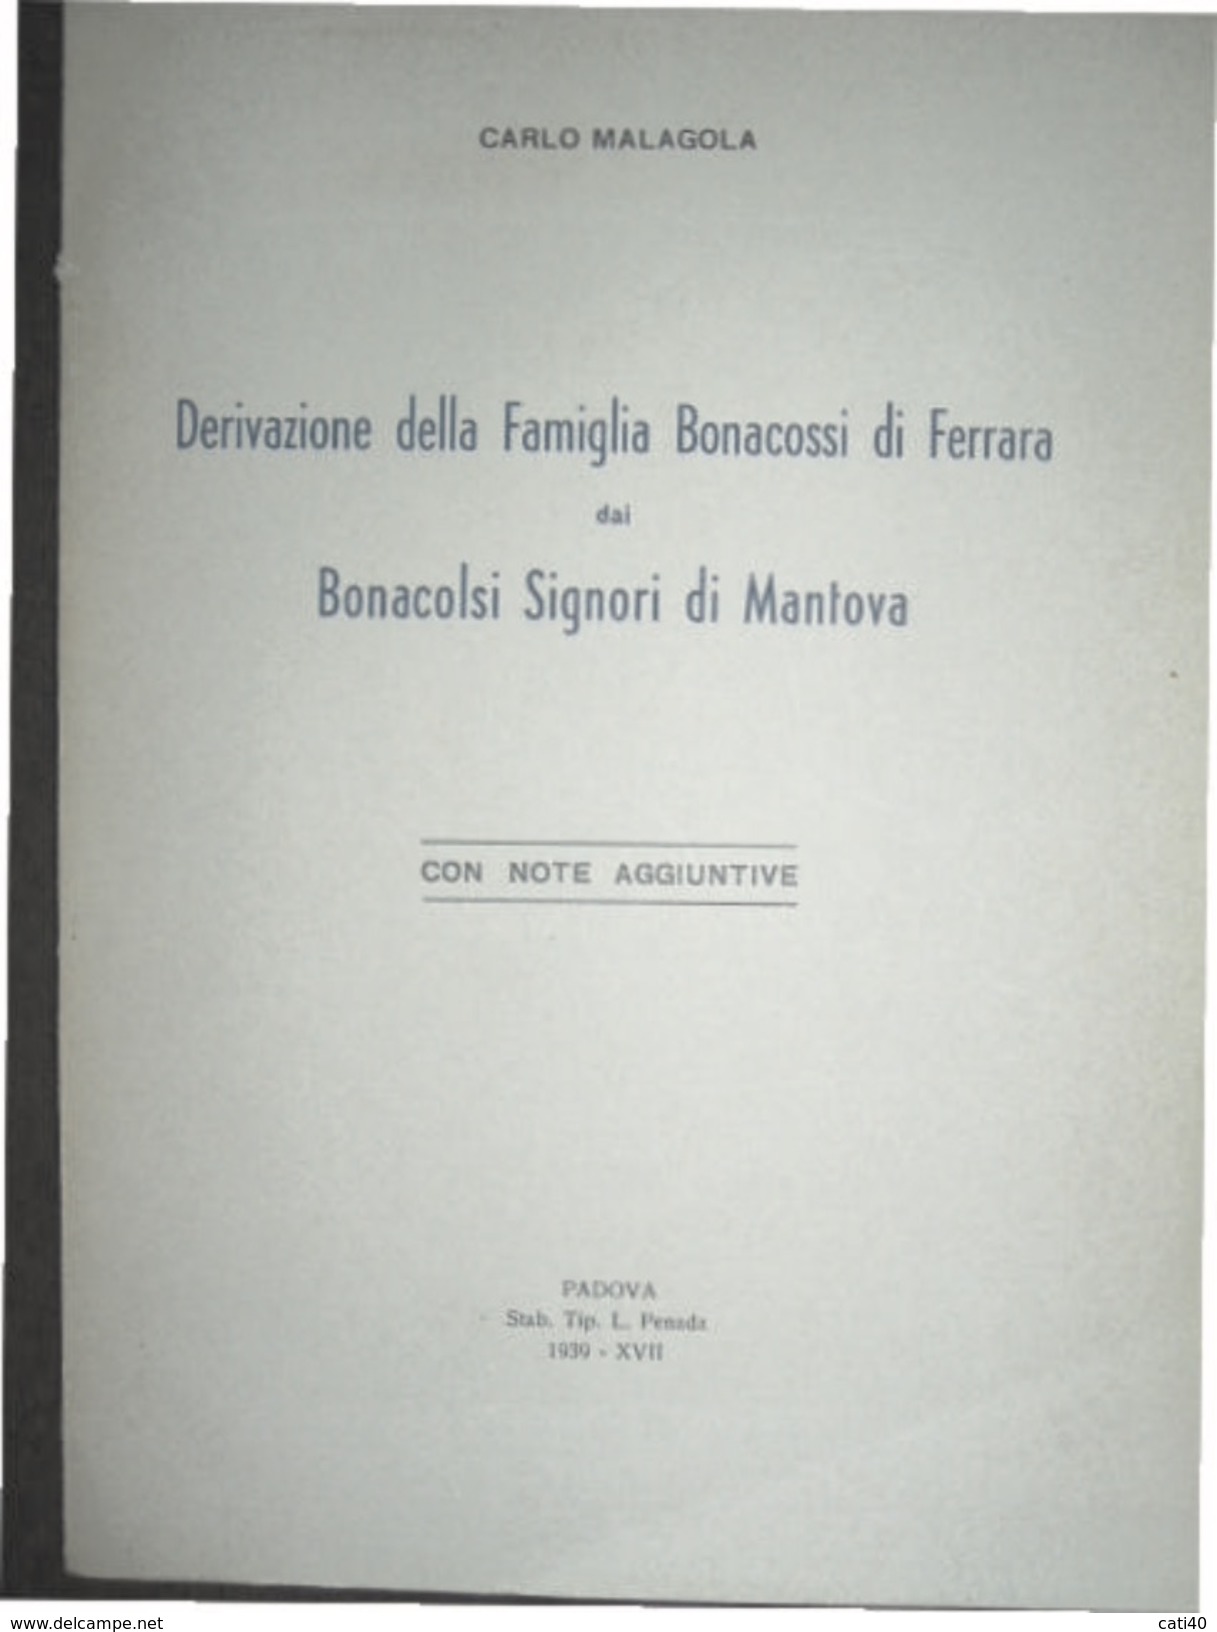 CARLO MALAGOLA DERIVAZIONE FAMIGLIA BONACOSSI DI FERRARA DAI BONACOLSI DI MANTOVA TIP.L.PENADA PADOVA 1939 - XVII - Textes Scientifiques